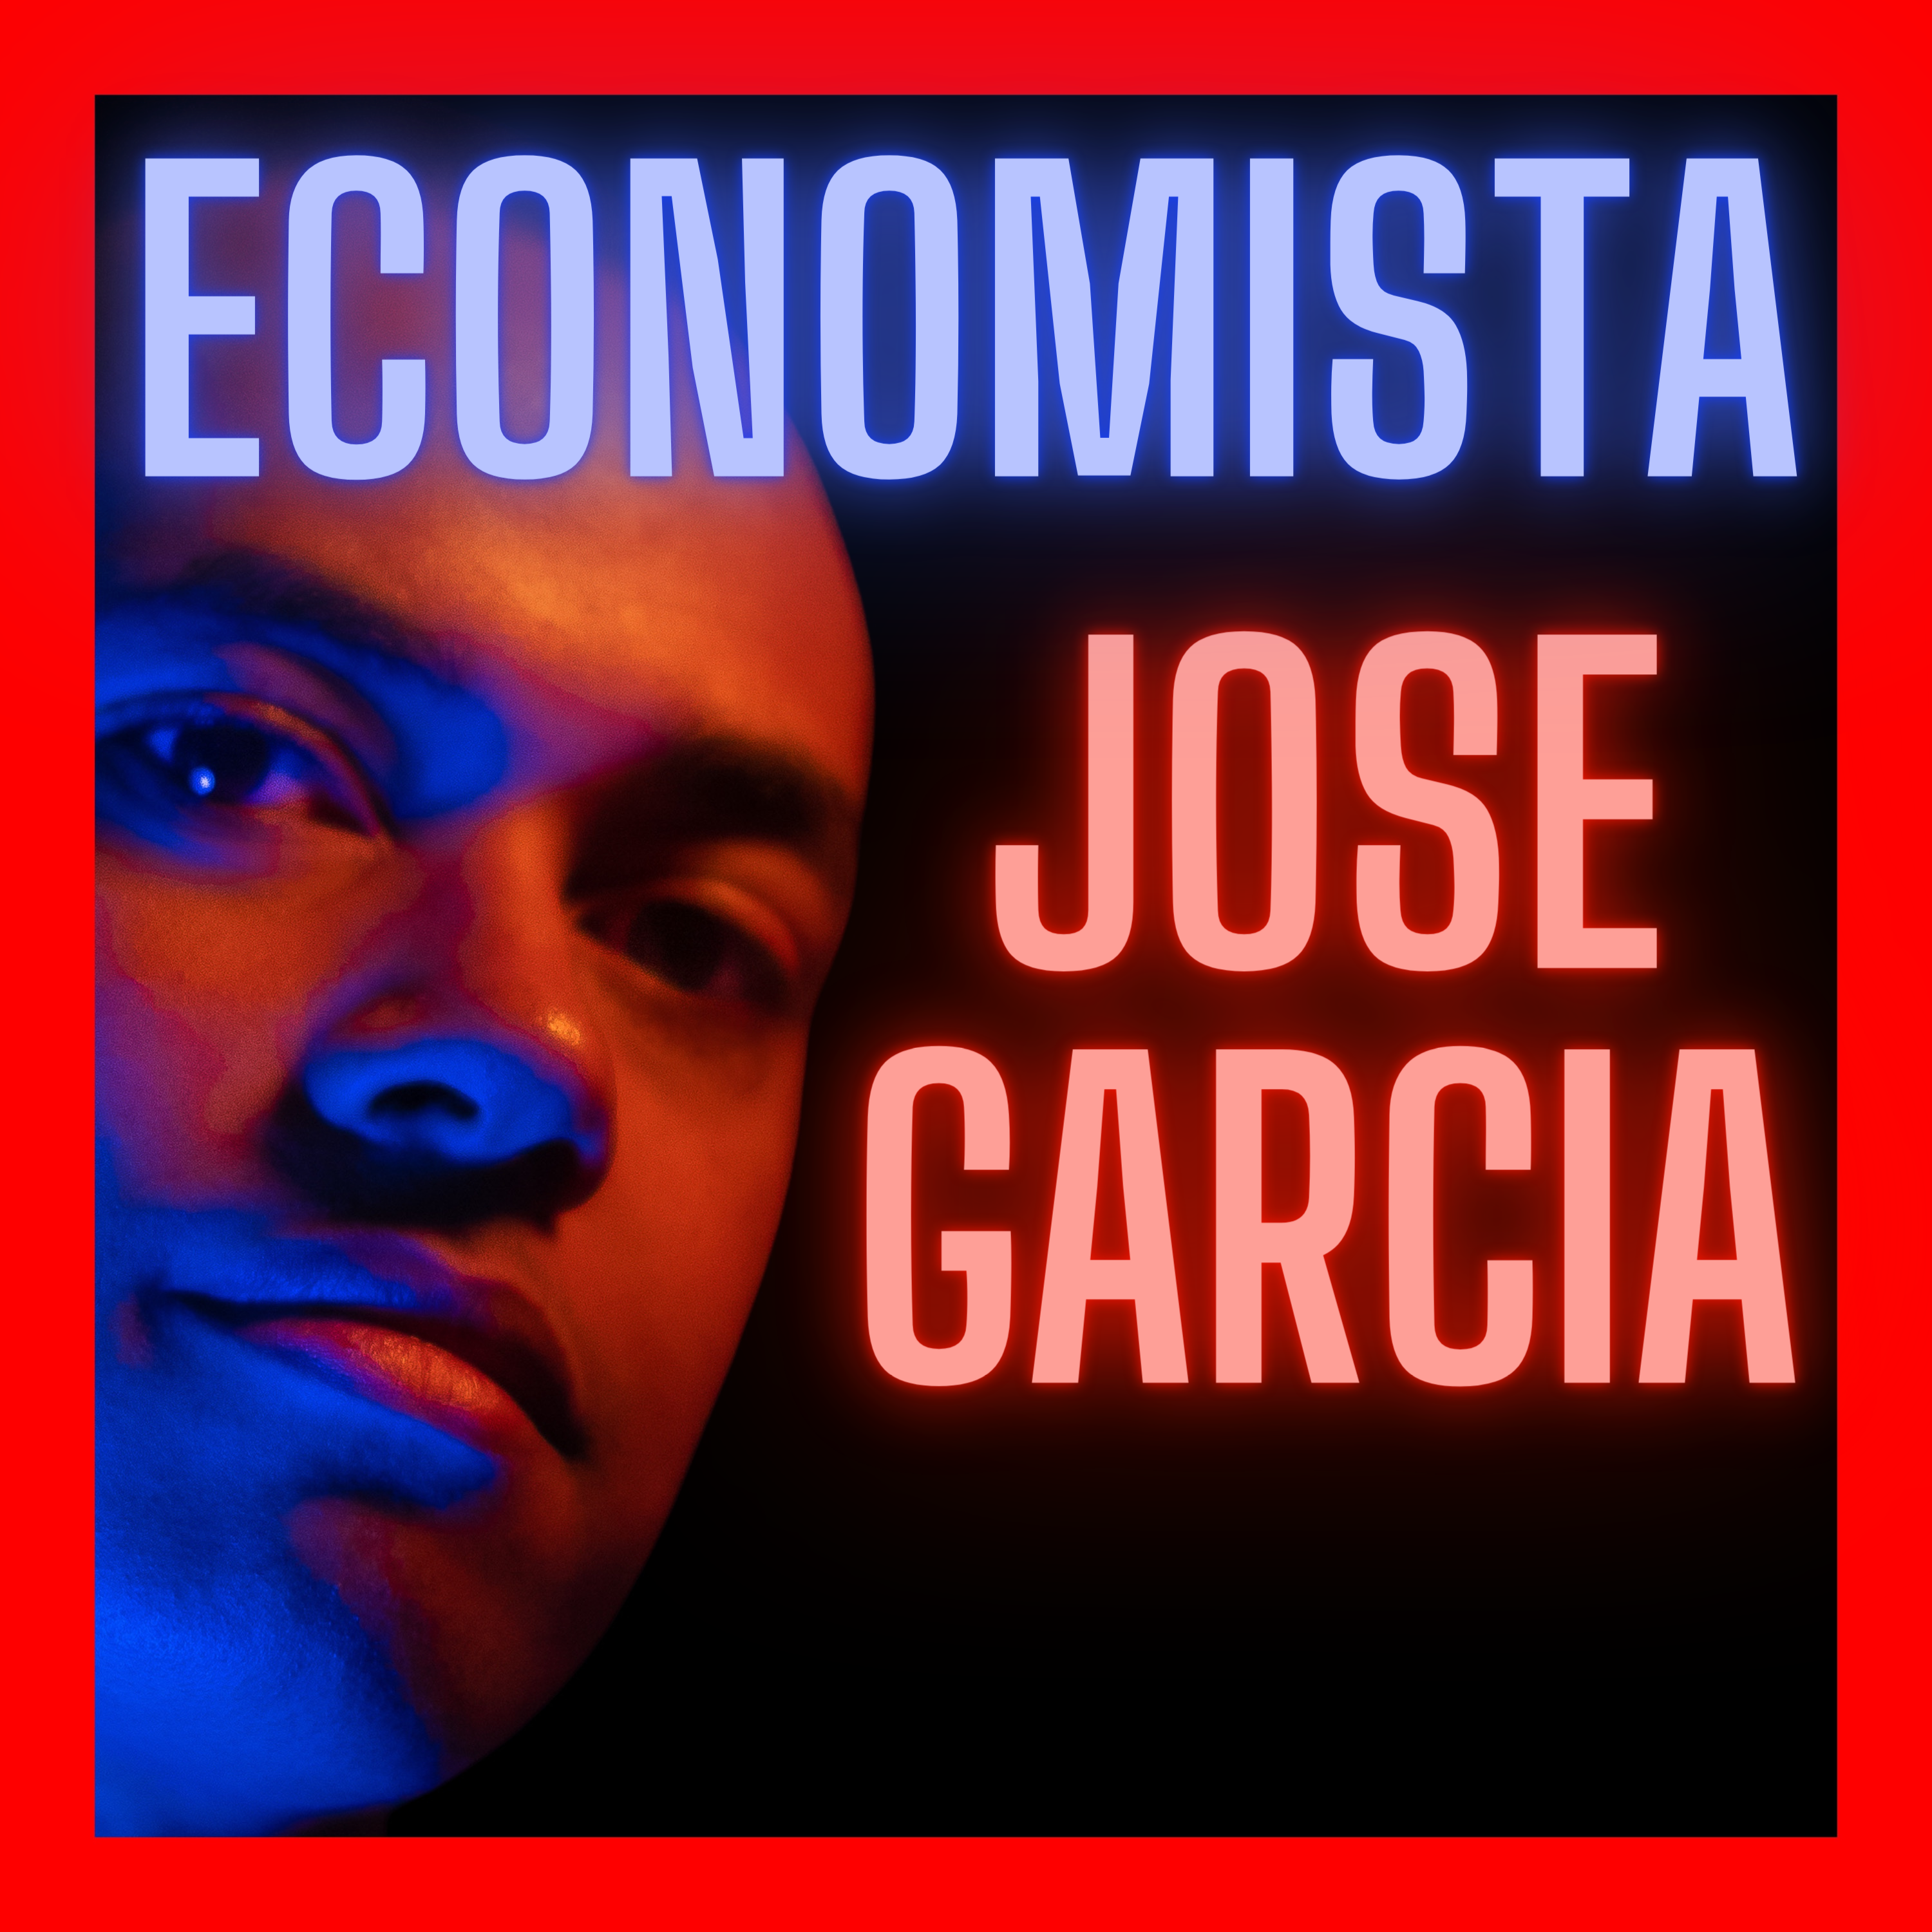 El Origen del Mal - Mejora y Emprende - Economista Jose Garcia